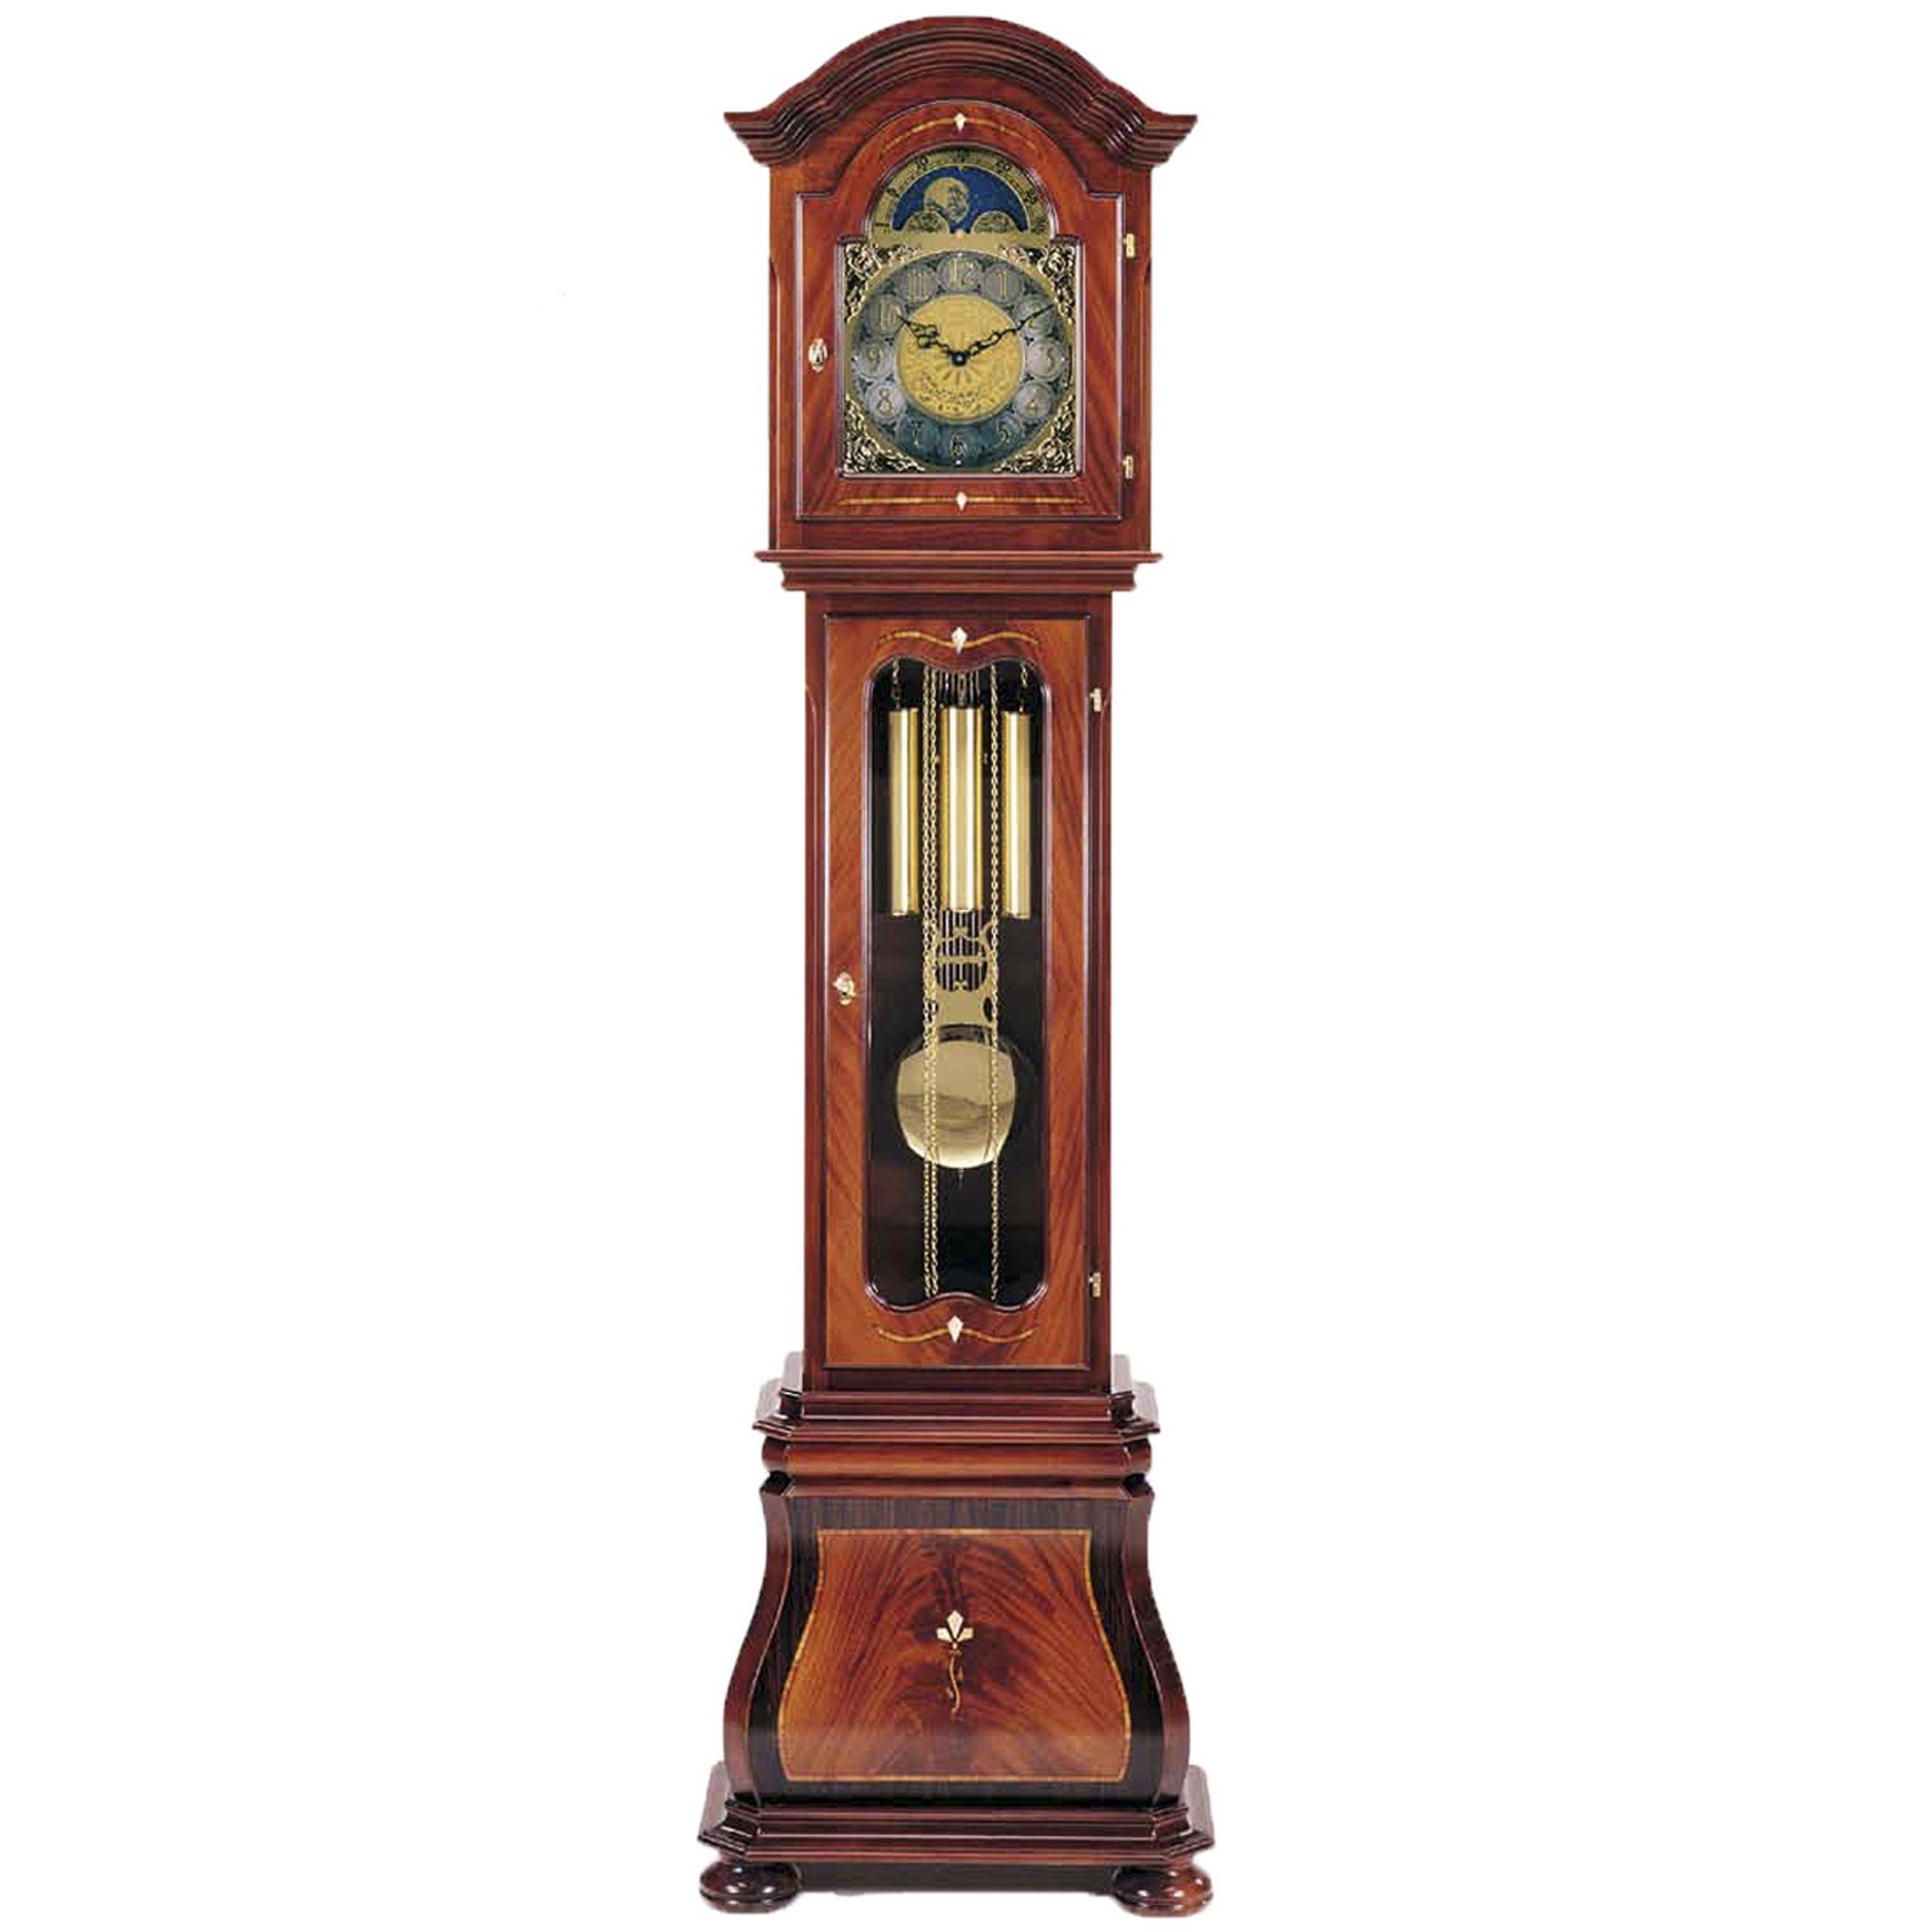 Напольные часы 5. Grandfather Clock часы. Часы напольные (Art.200/c) - Venezia ciliegio. Старинные напольные часы.